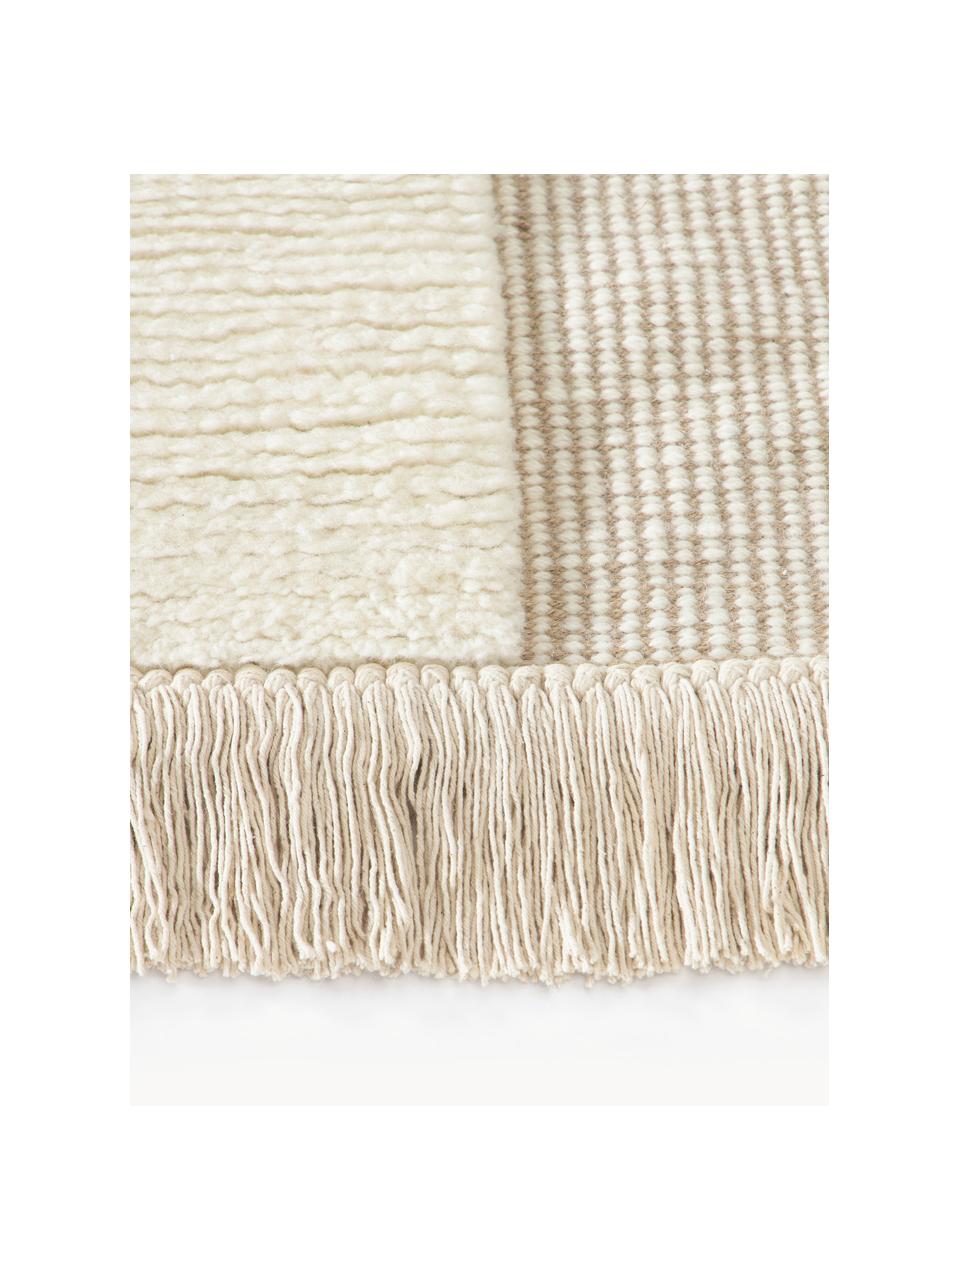 Handgewebter Teppich Laine mit Hoch-Tief-Muster und Fransen, 57 % Wolle (RWS-zertifiziert), 35 % Jute, 8 % Baumwolle, Beige, Cremeweiss, B 160 x L 230 cm (Grösse M)